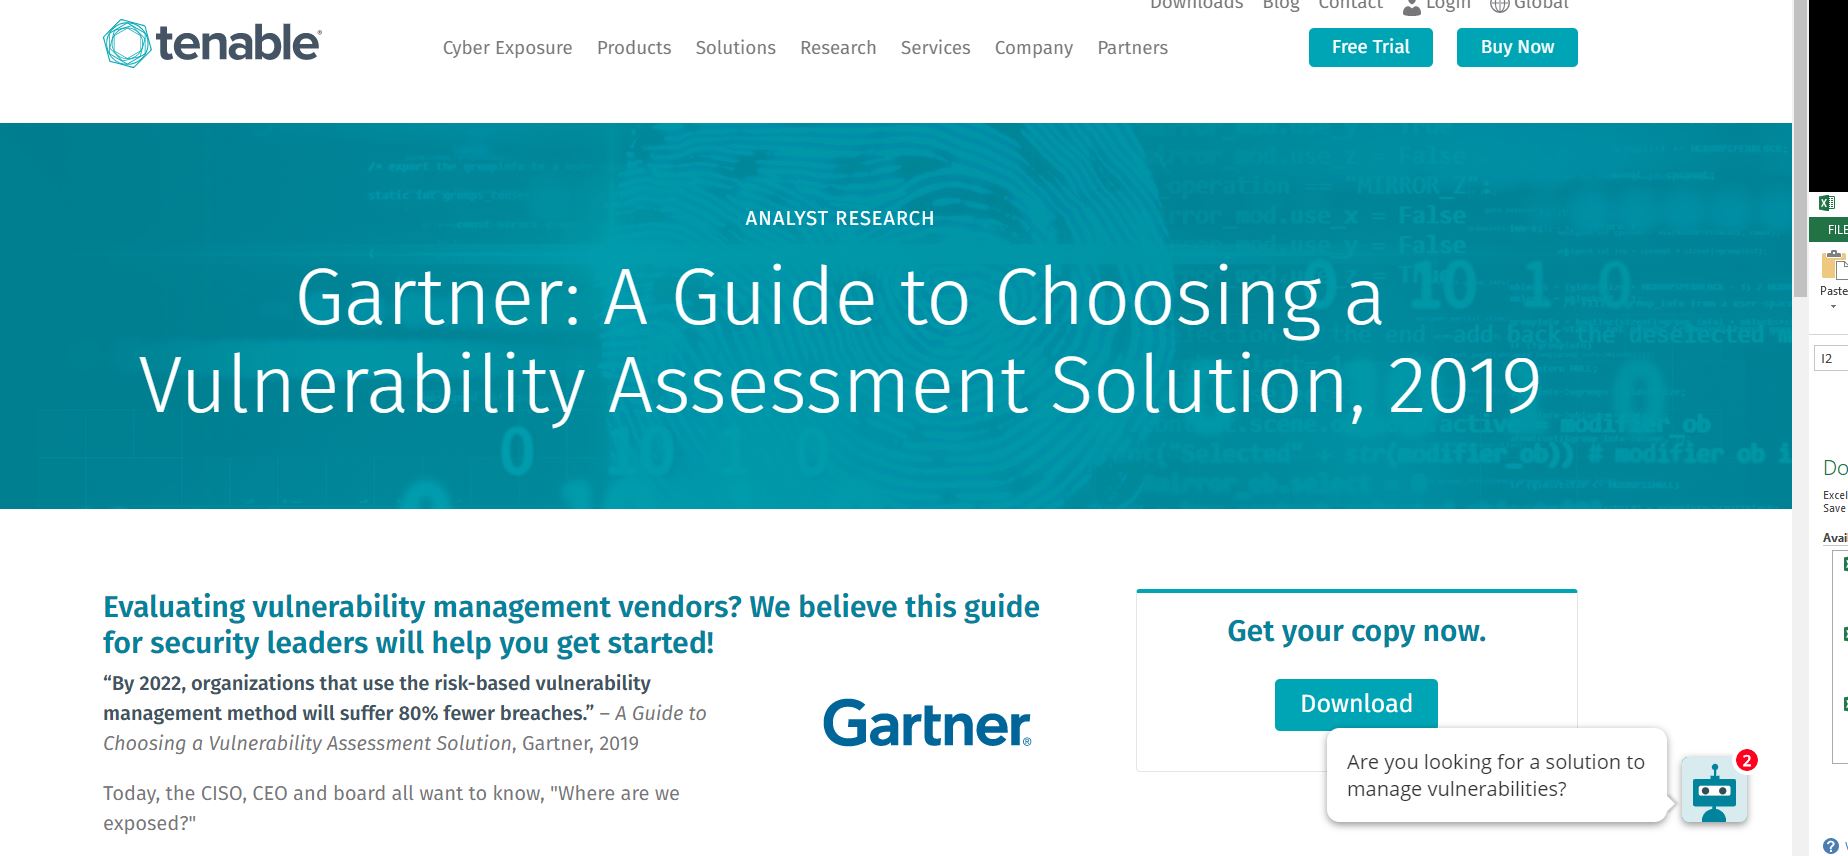 Gartner: A Guide to Choosing a Vulnerability Assessment Solution, 2019